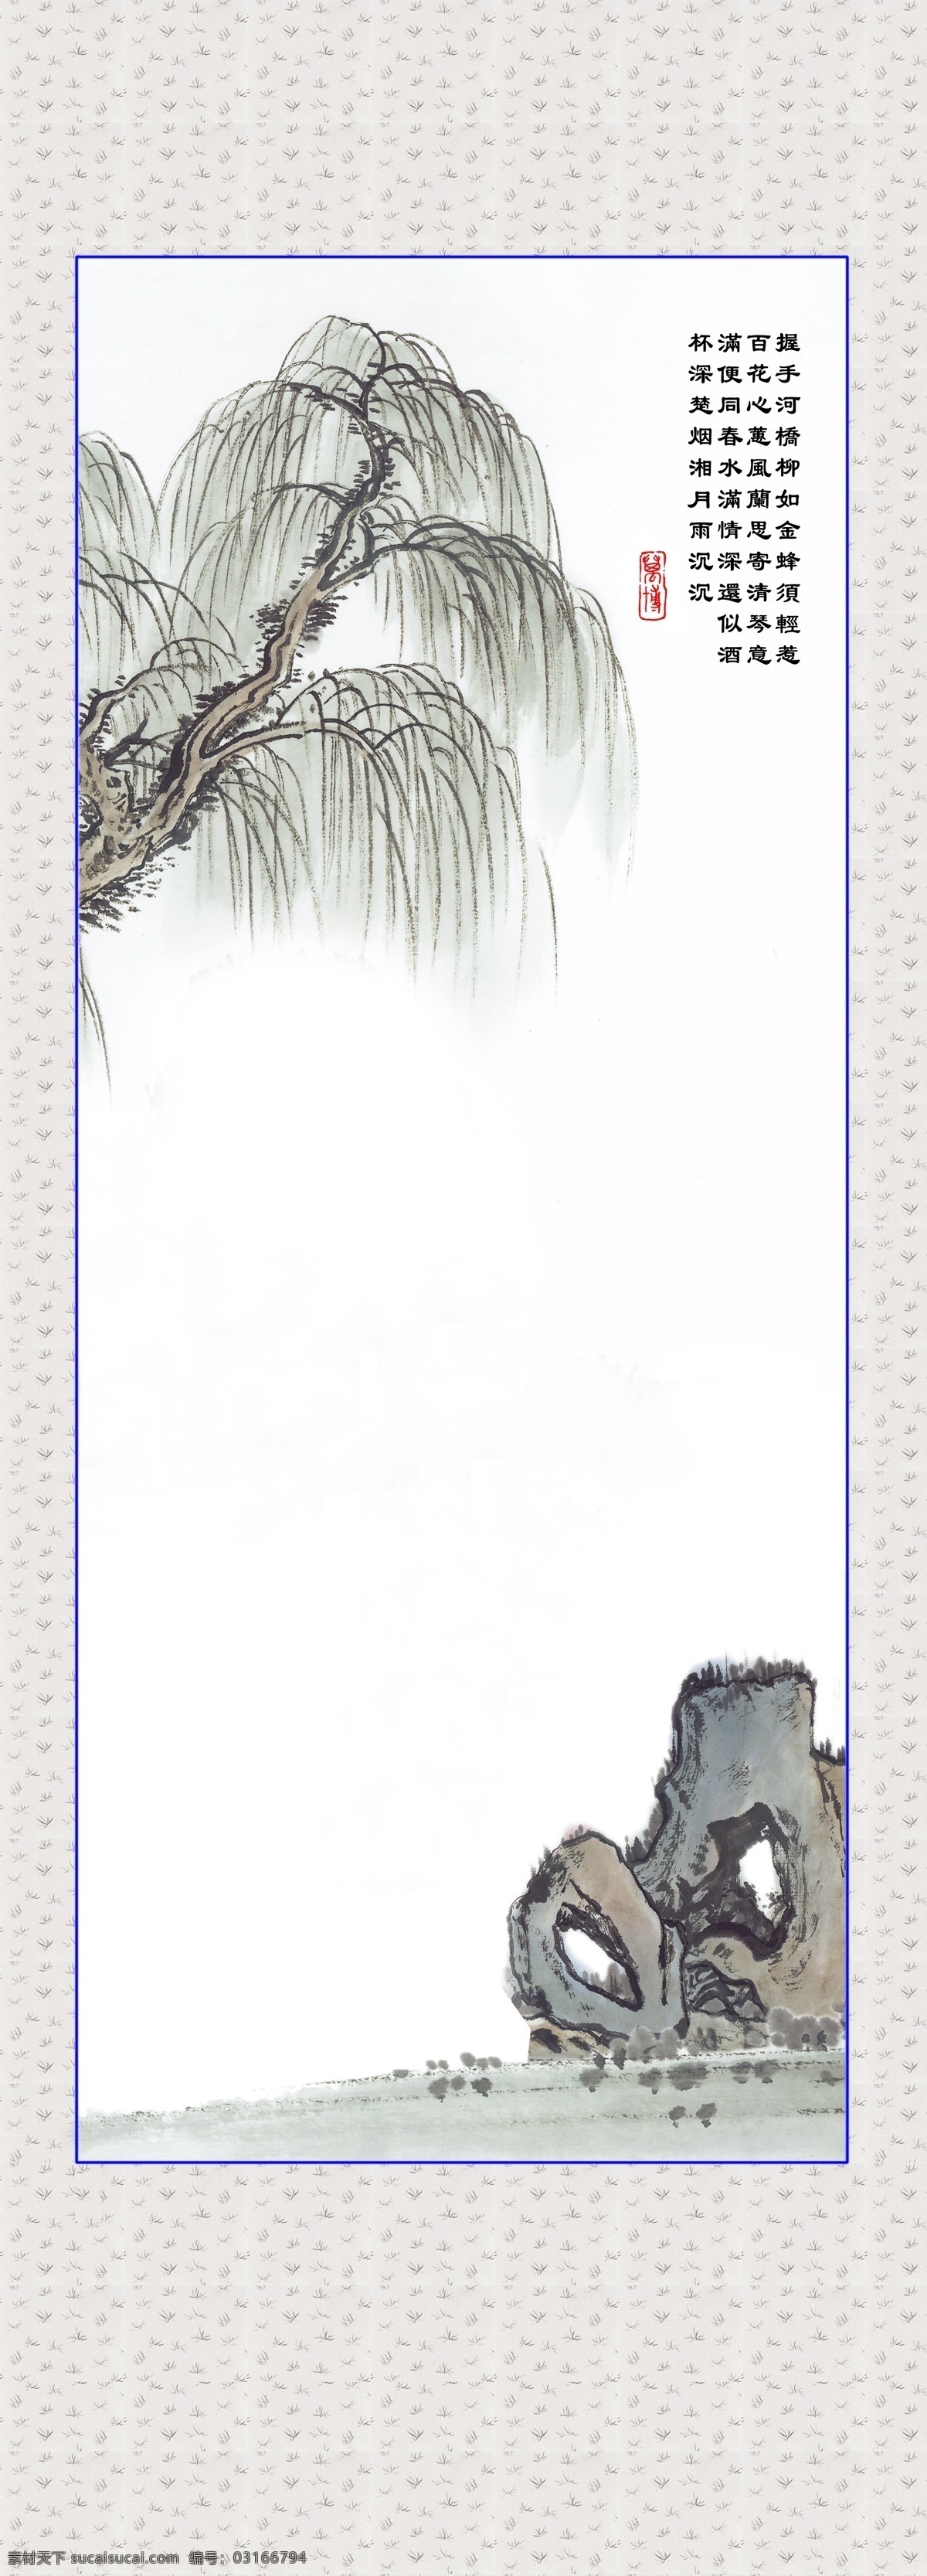 水墨画 垂柳 背景 图 x展架 传统 底板 假山 山水 书法 水墨 展板 背景图片